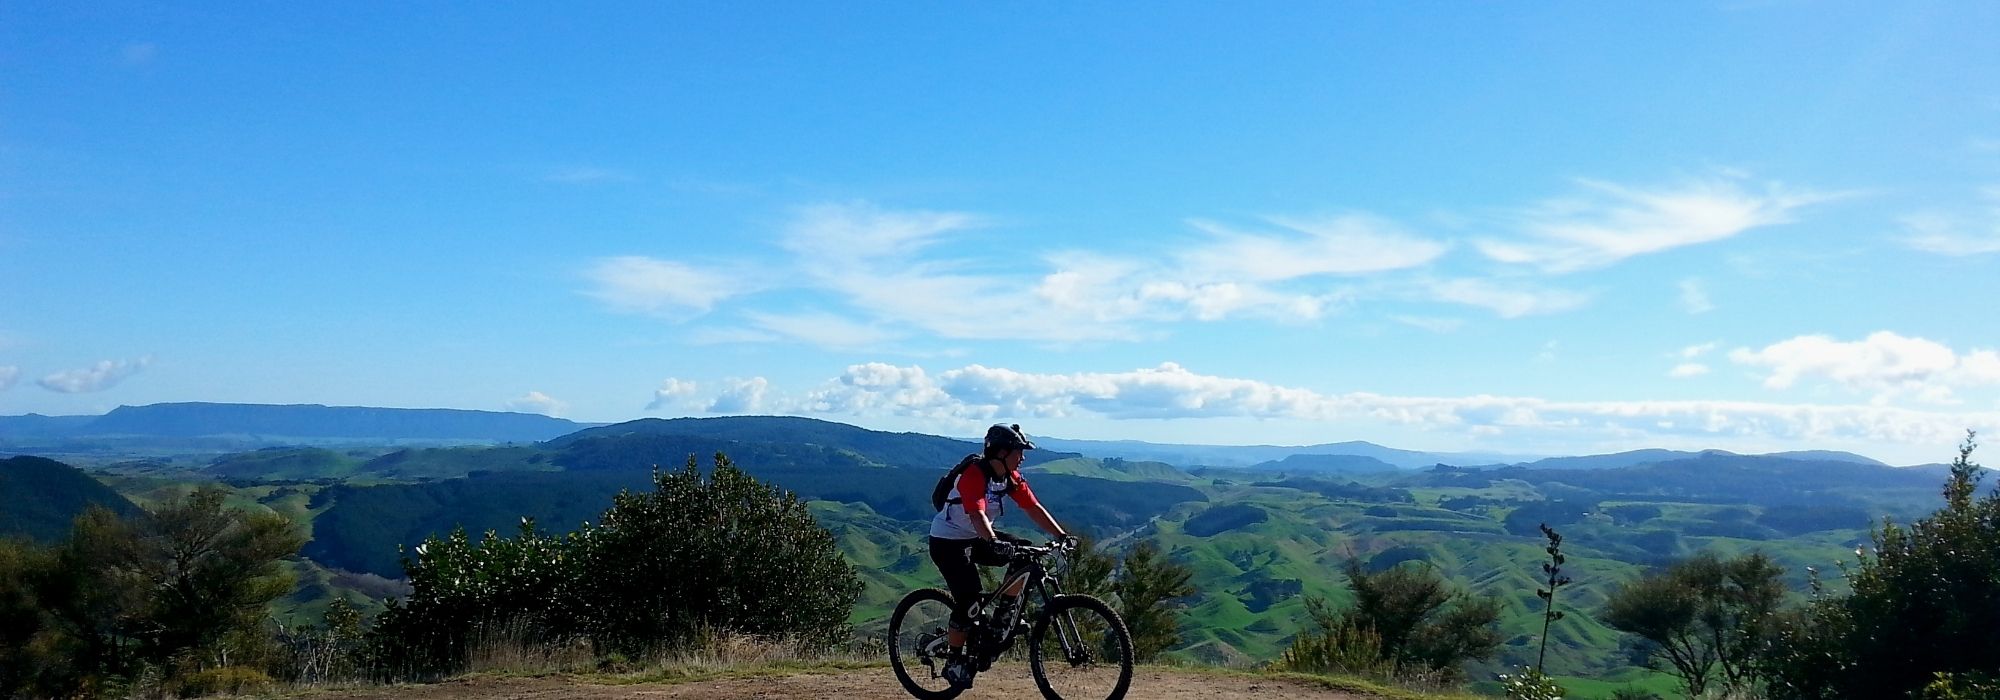 Planning your biking visit to Rotorua?